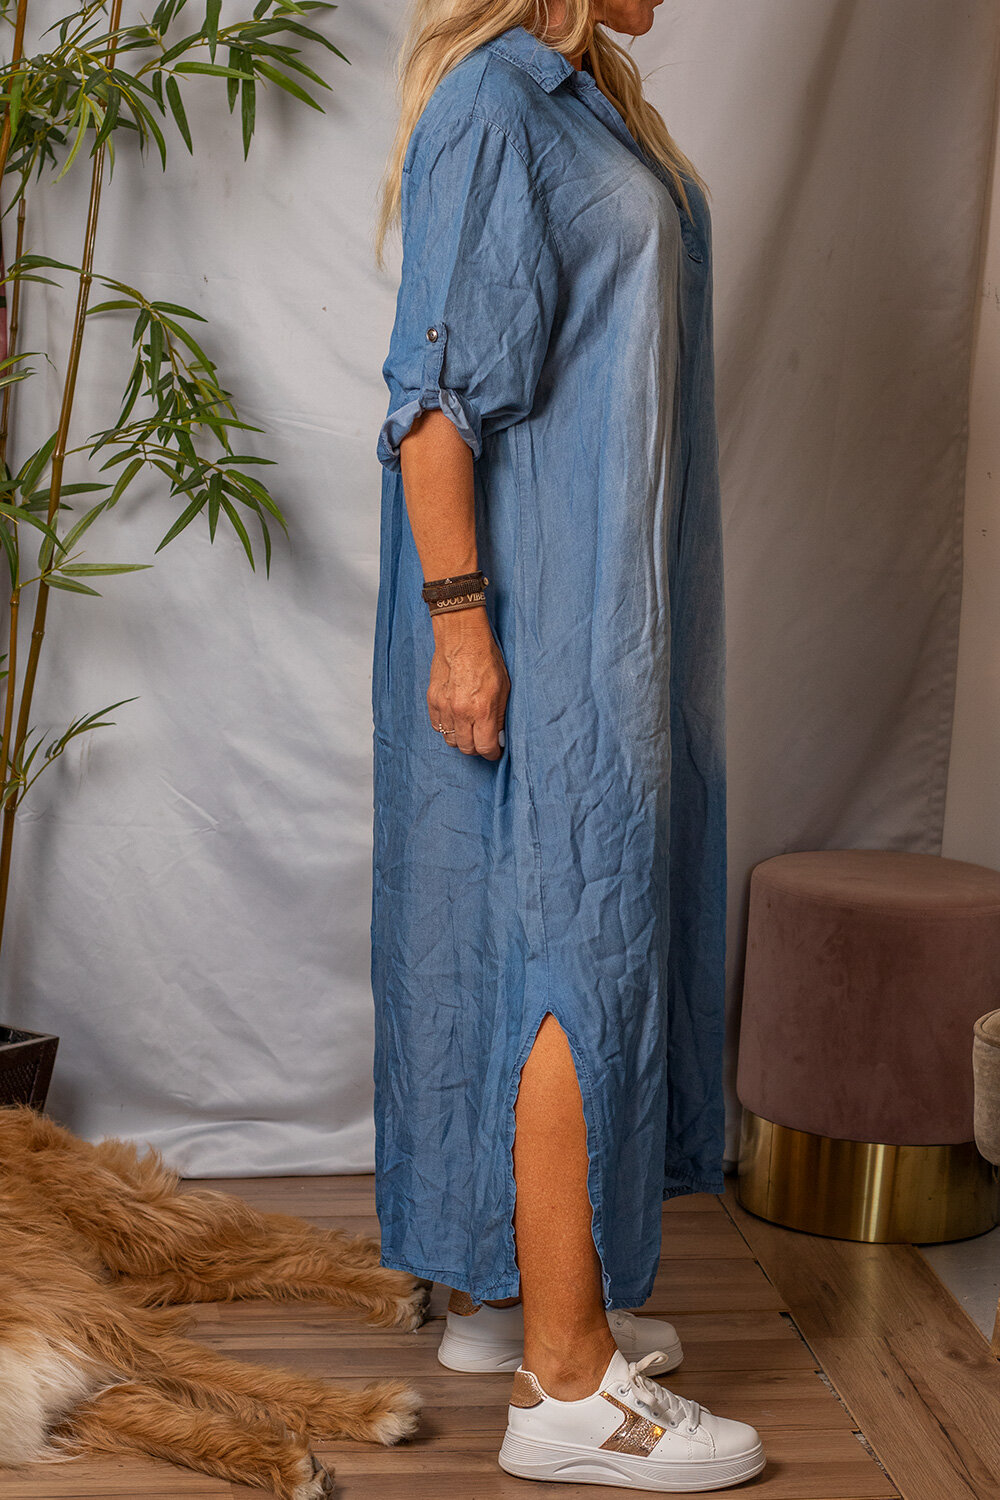 Leona Lång jeansklänning